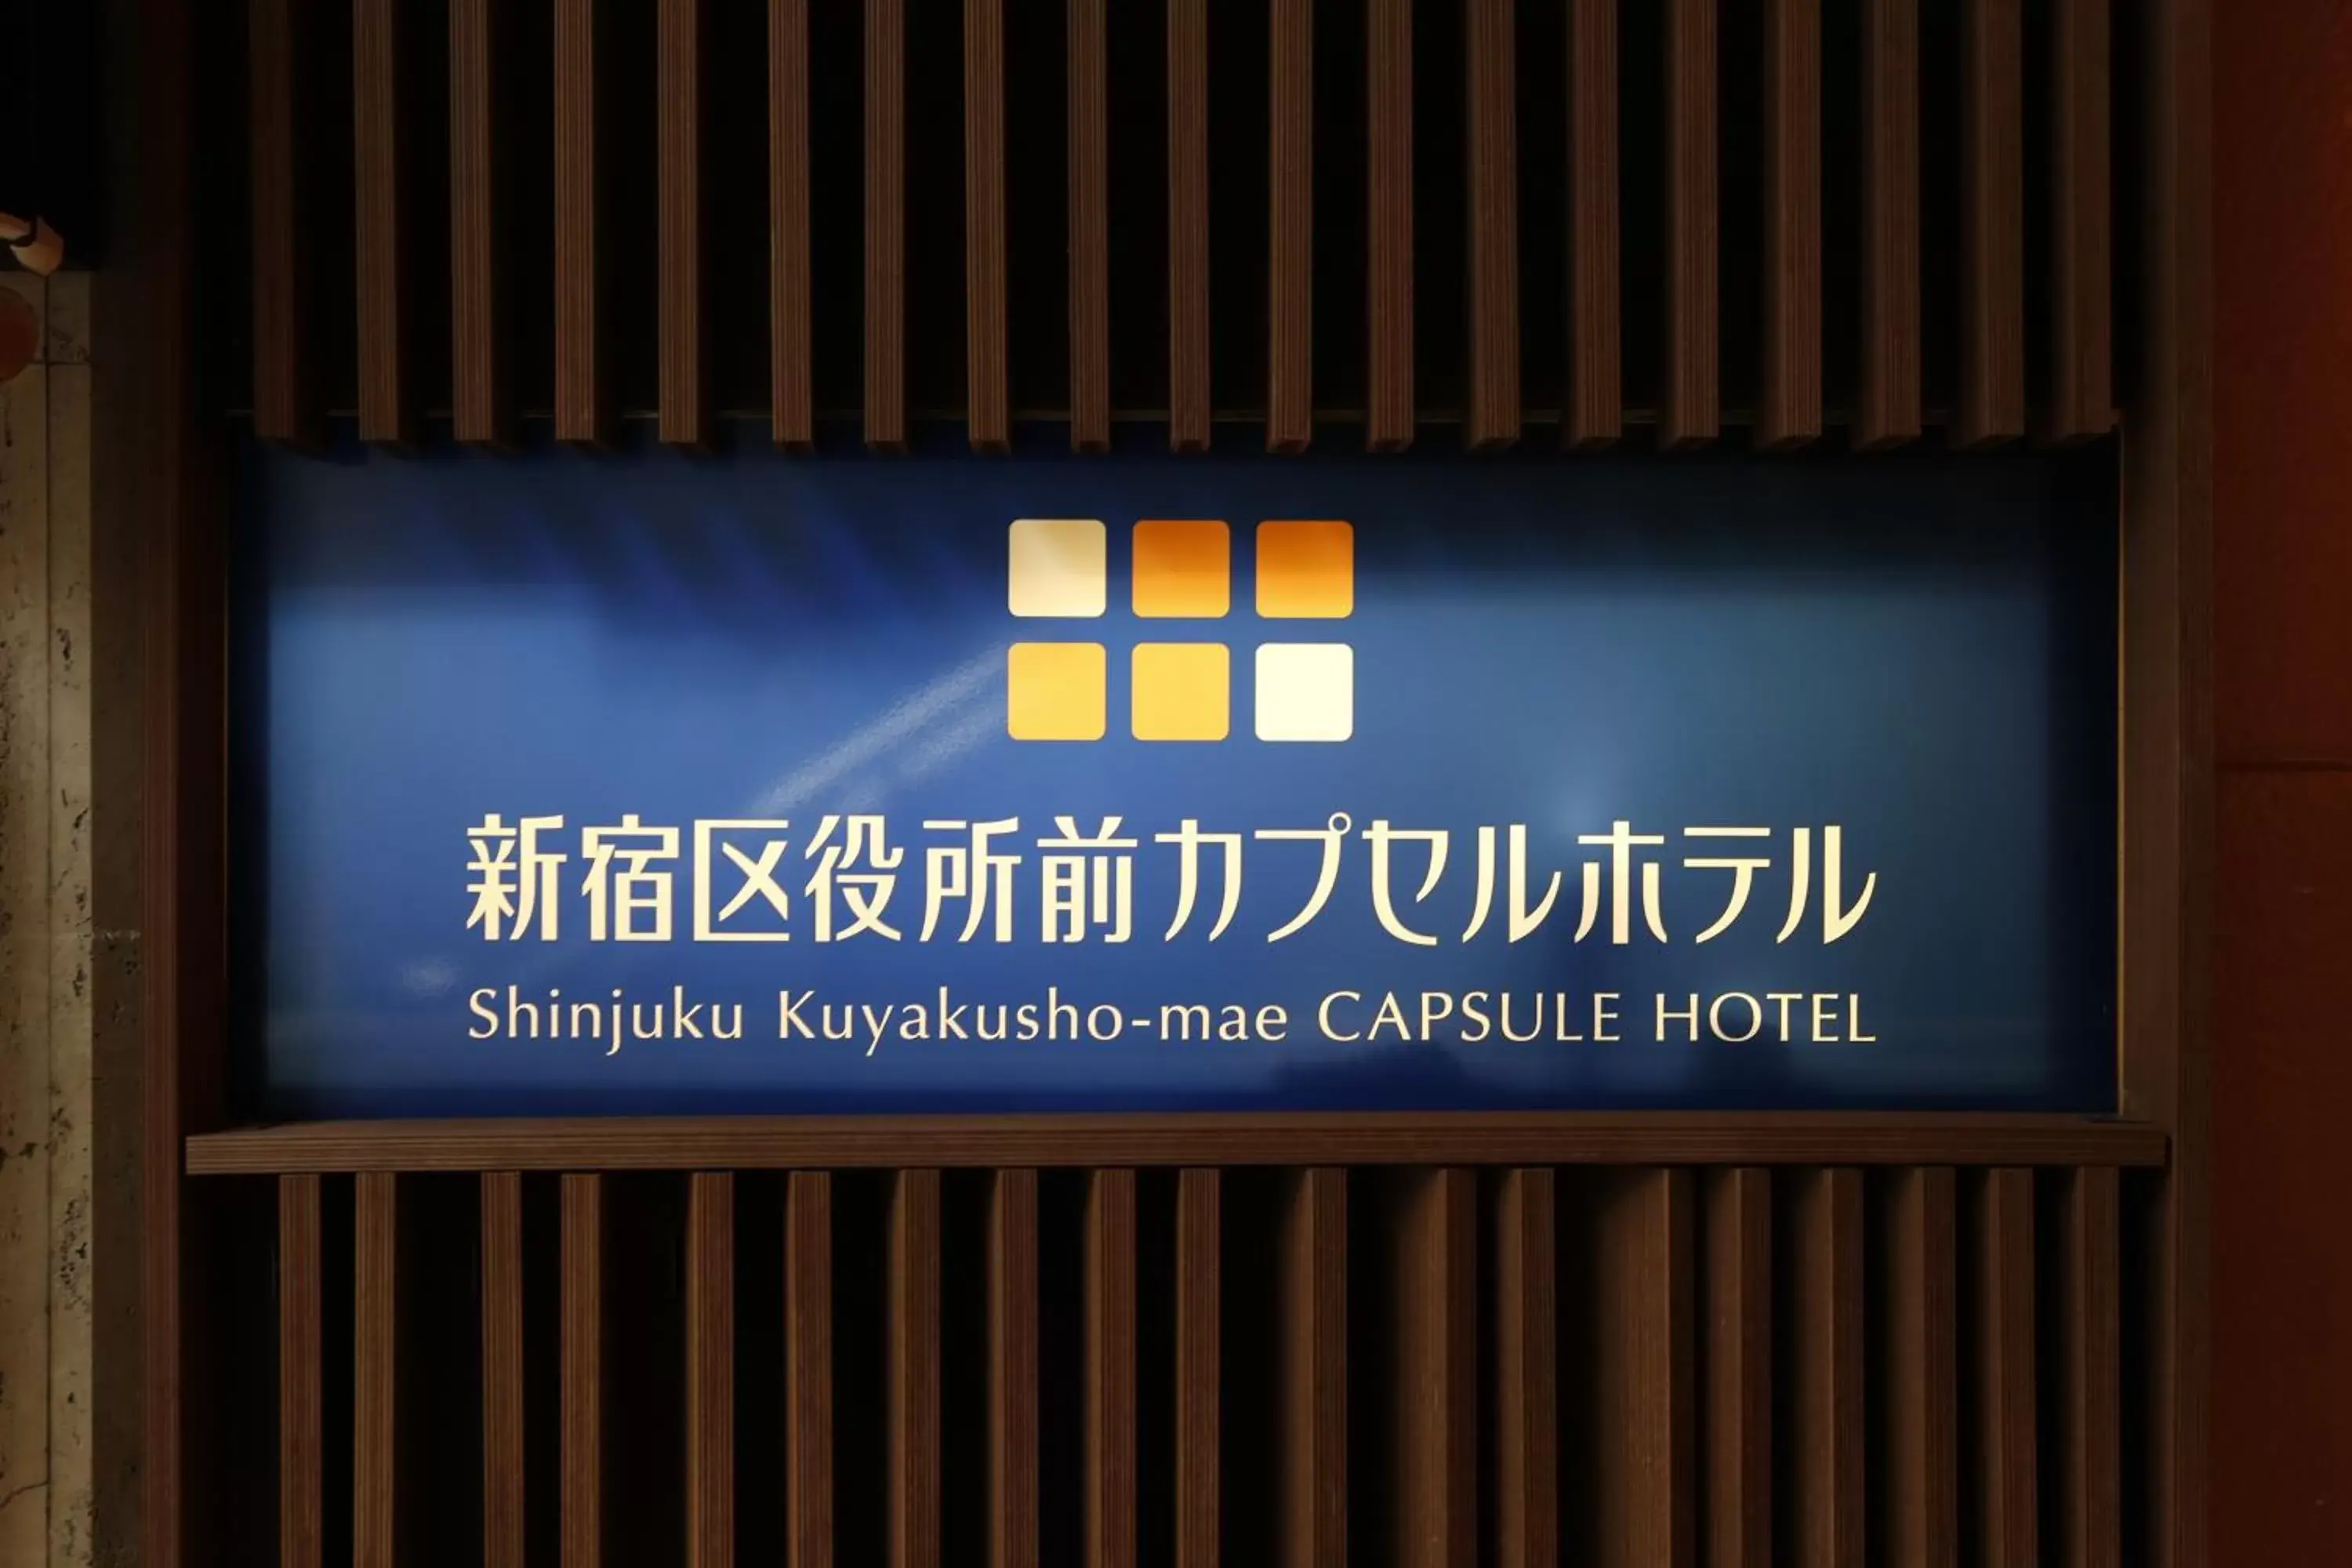 Property logo or sign in Shinjuku Kuyakusho-mae Capsule Hotel